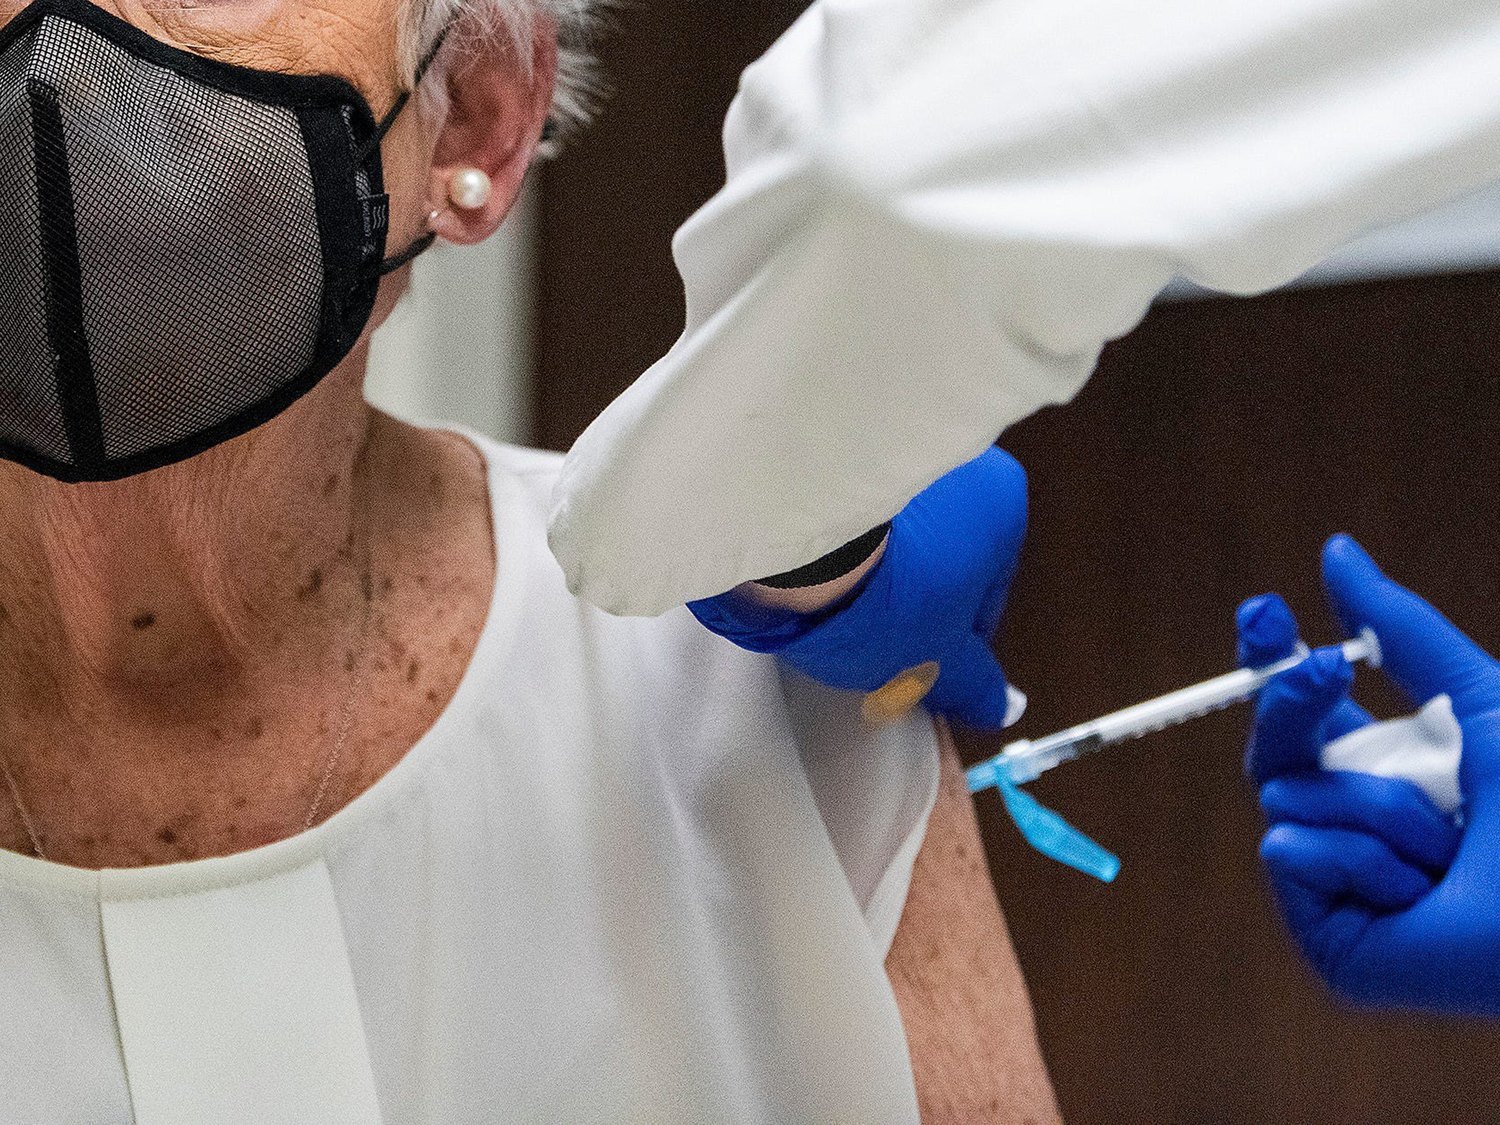 Un juez obliga por primera vez a vacuna contra el coronavirus a una anciana pese a la negativa de su familia